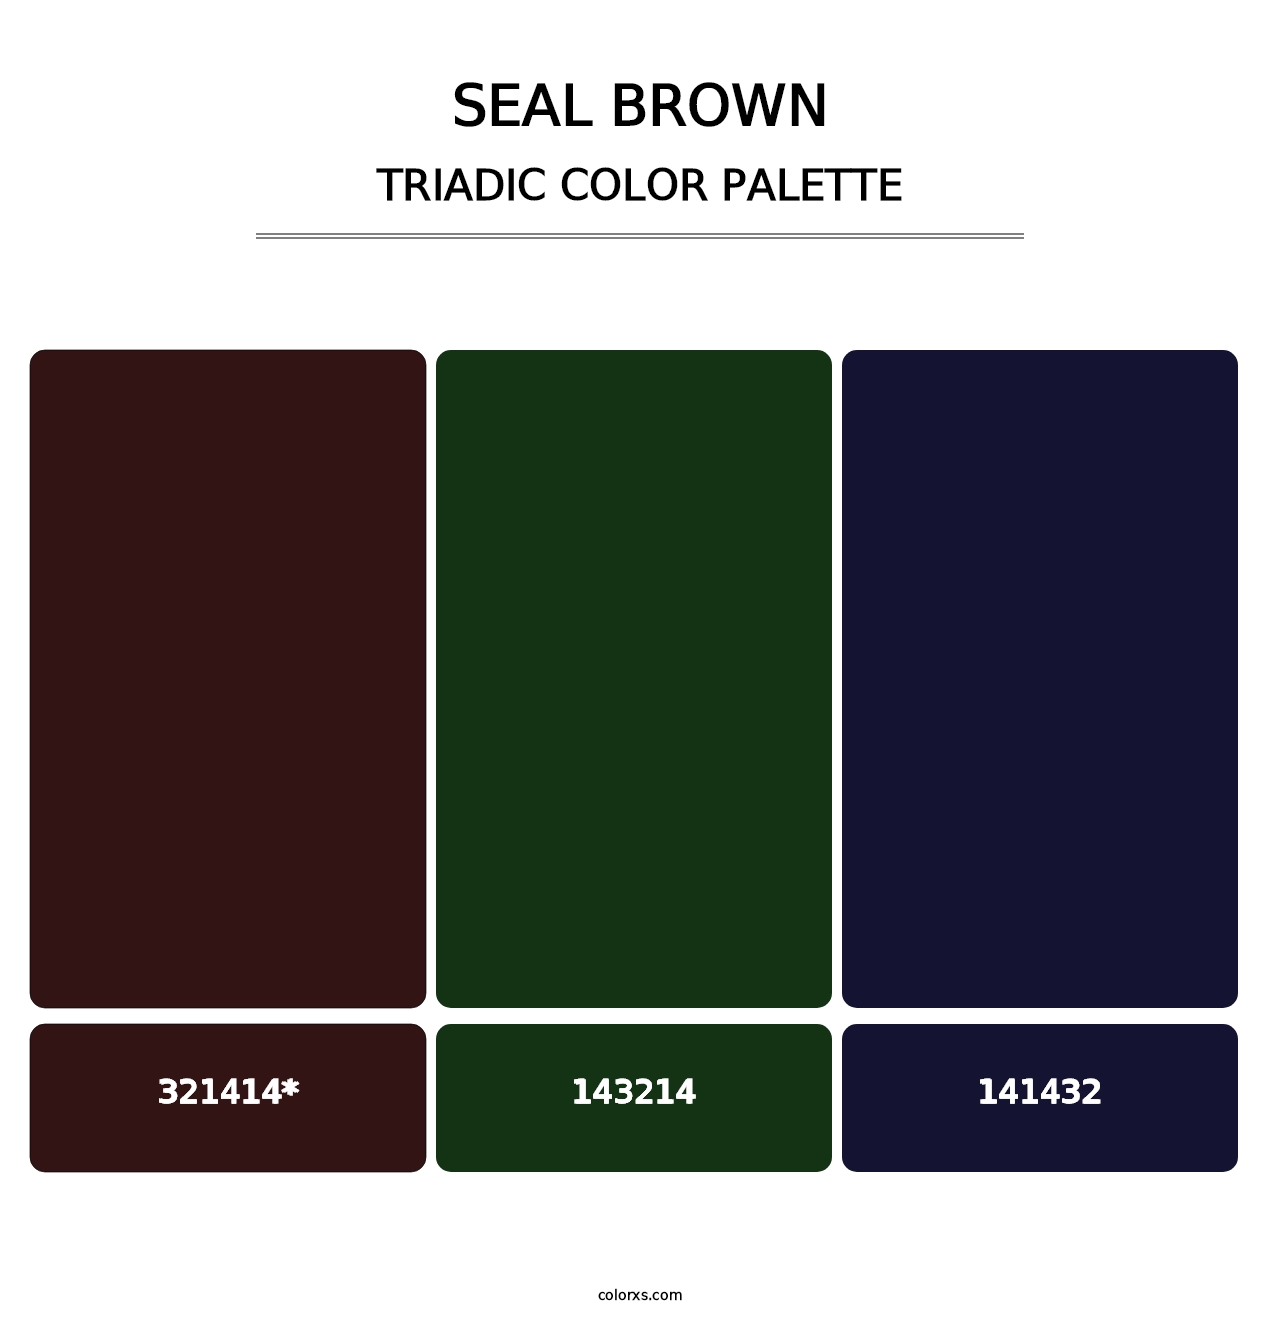 Seal brown - Triadic Color Palette